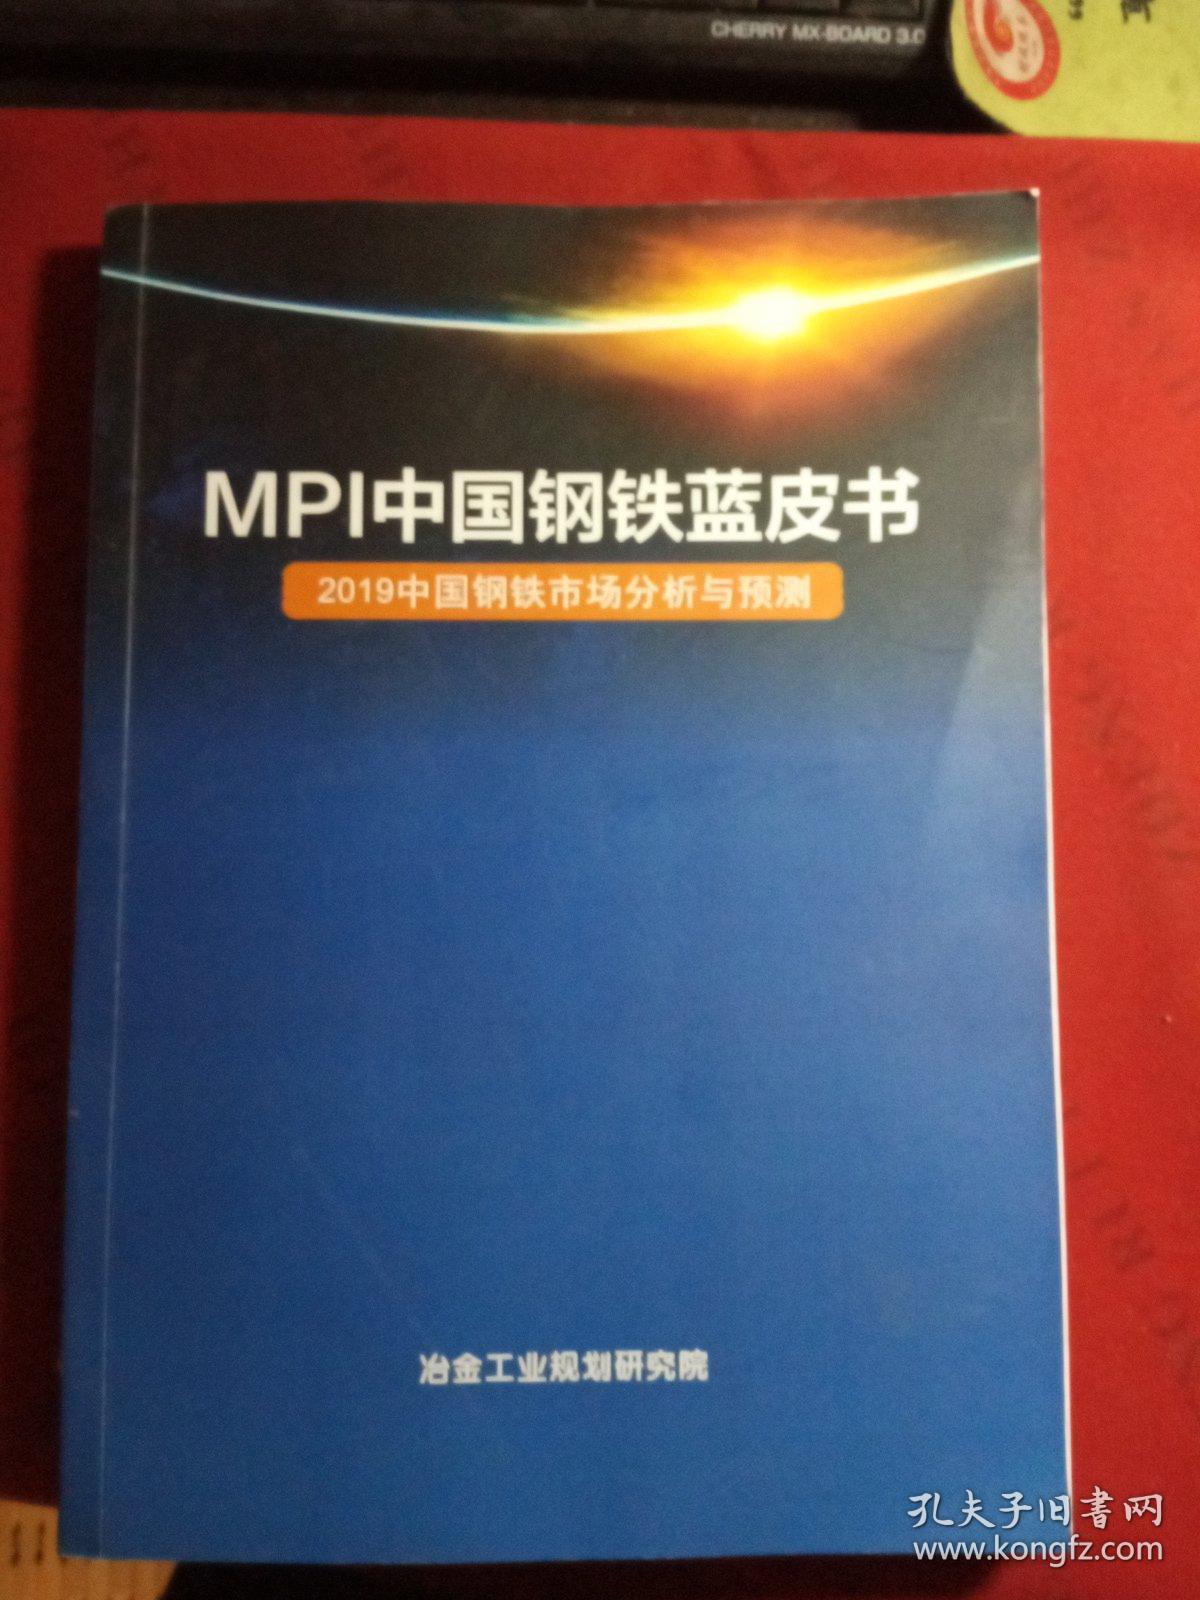 MPI中国钢铁蓝皮书 2019中国钢铁市场分析与预测